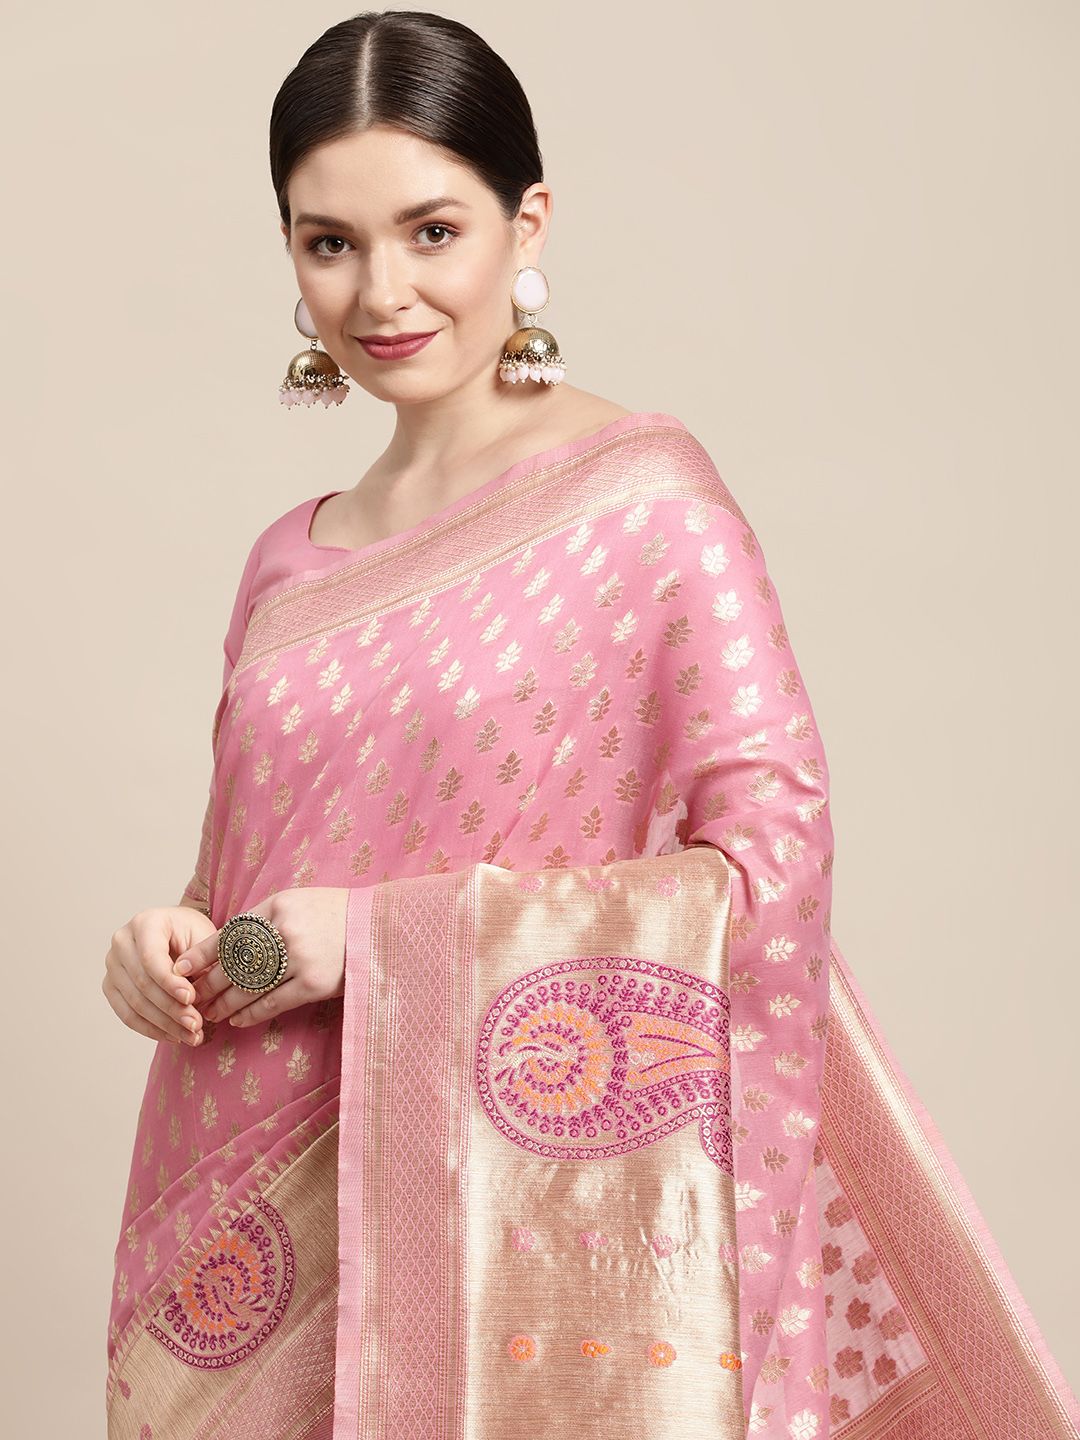 Saree mall Pink & Gold Floral Zari Silk Cotton Celebrity Banarasi Sarees Price in India